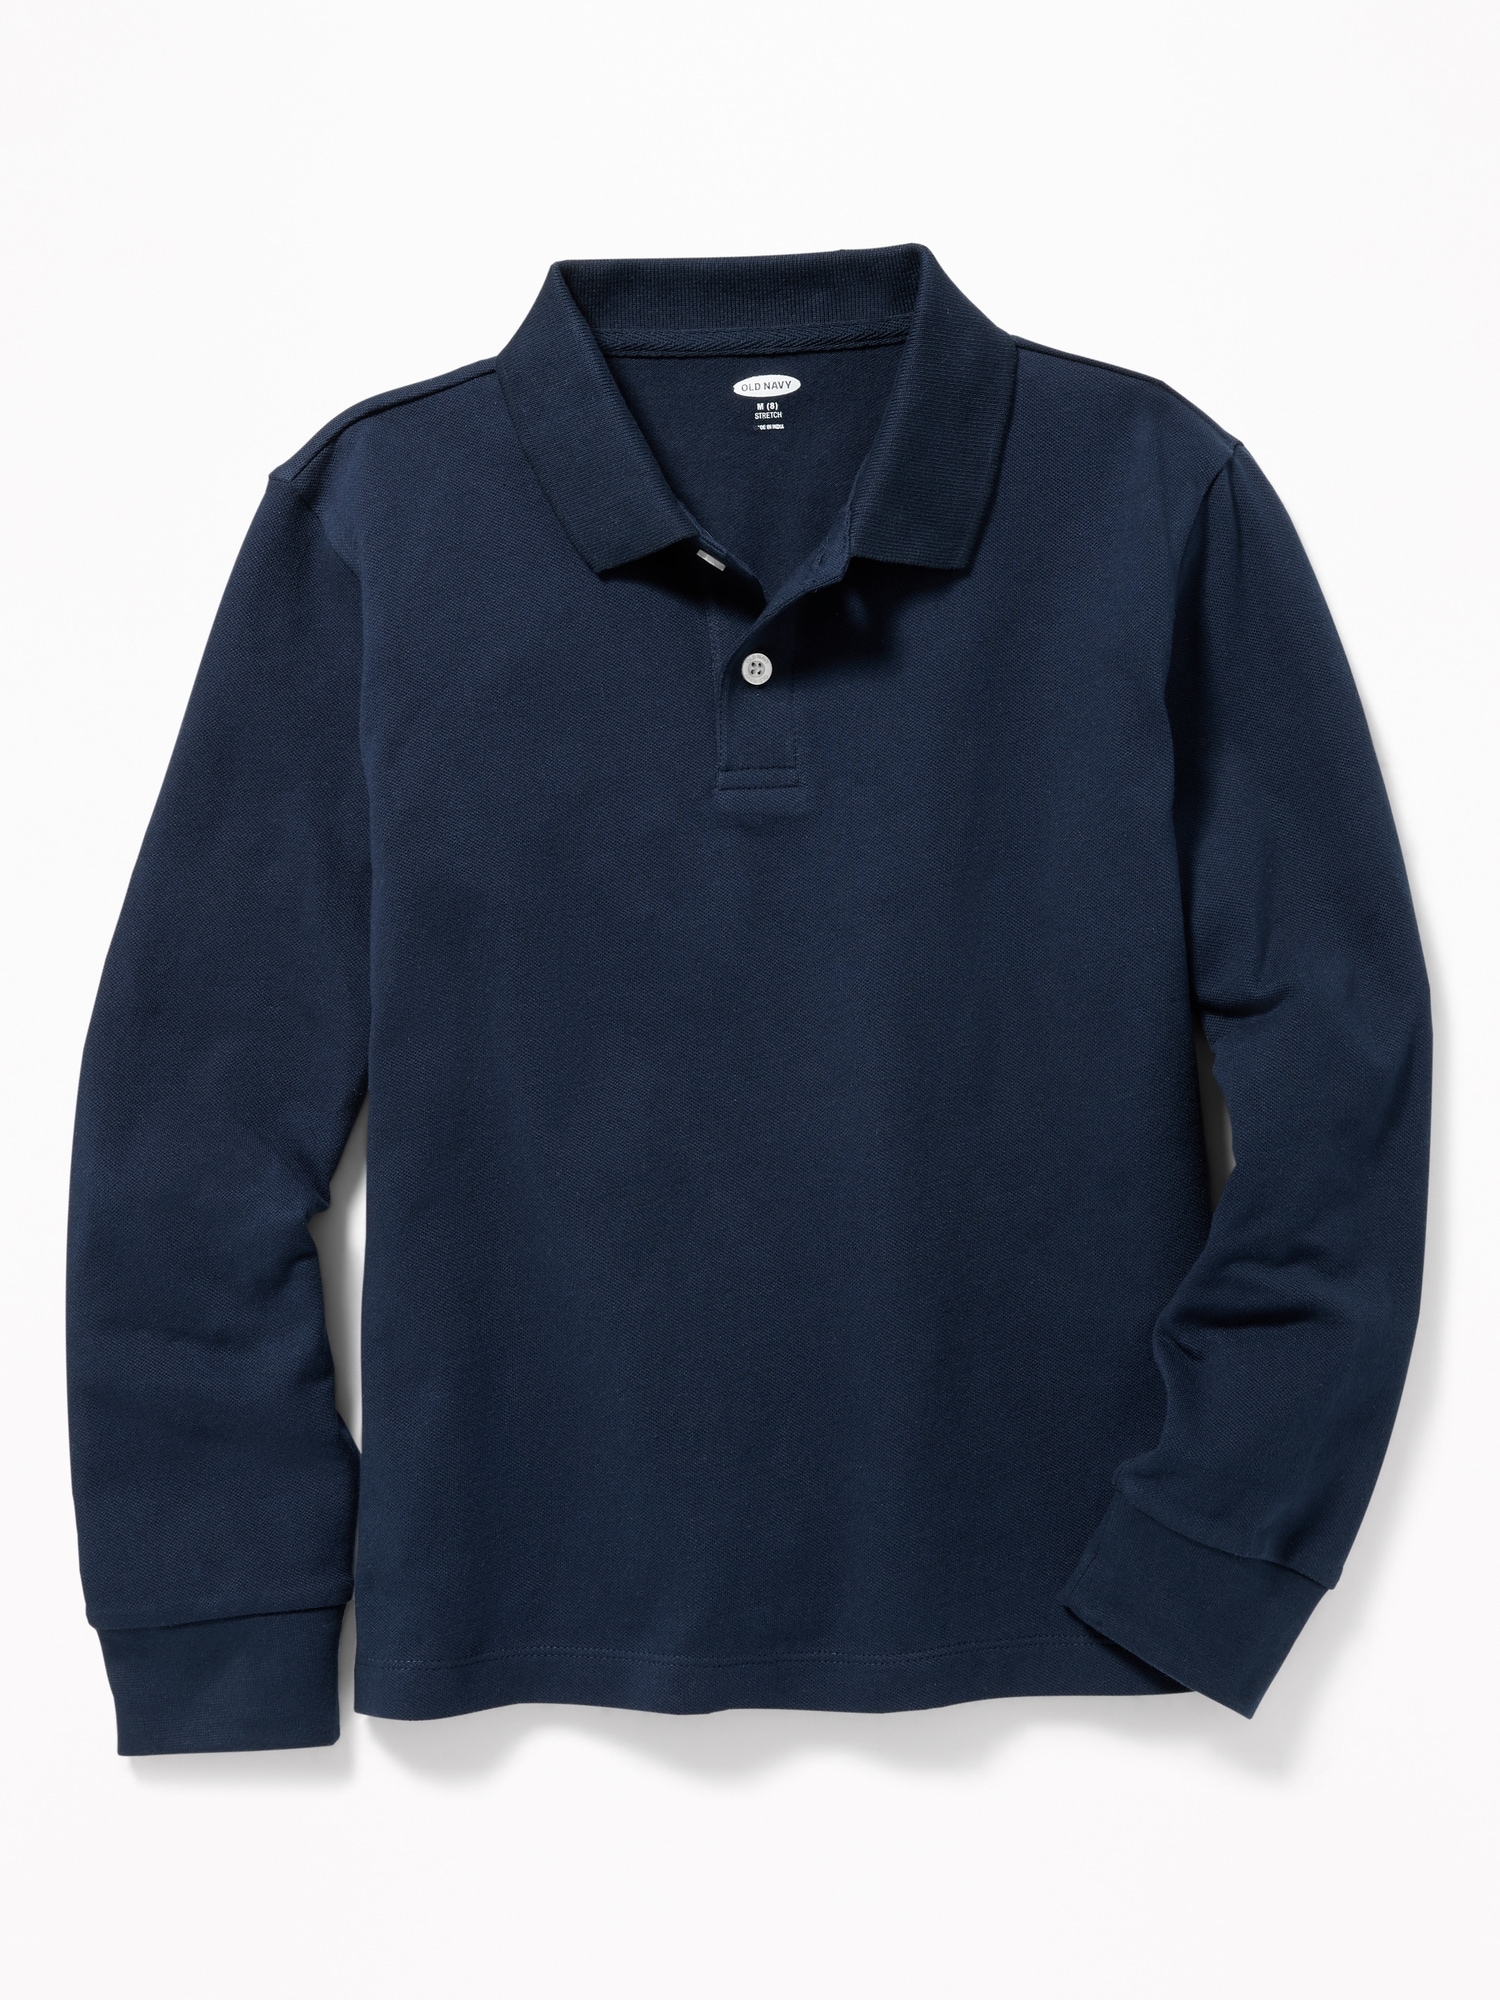 Old Navy School Uniform Long-Sleeve Polo Shirt for Boys blue. 1